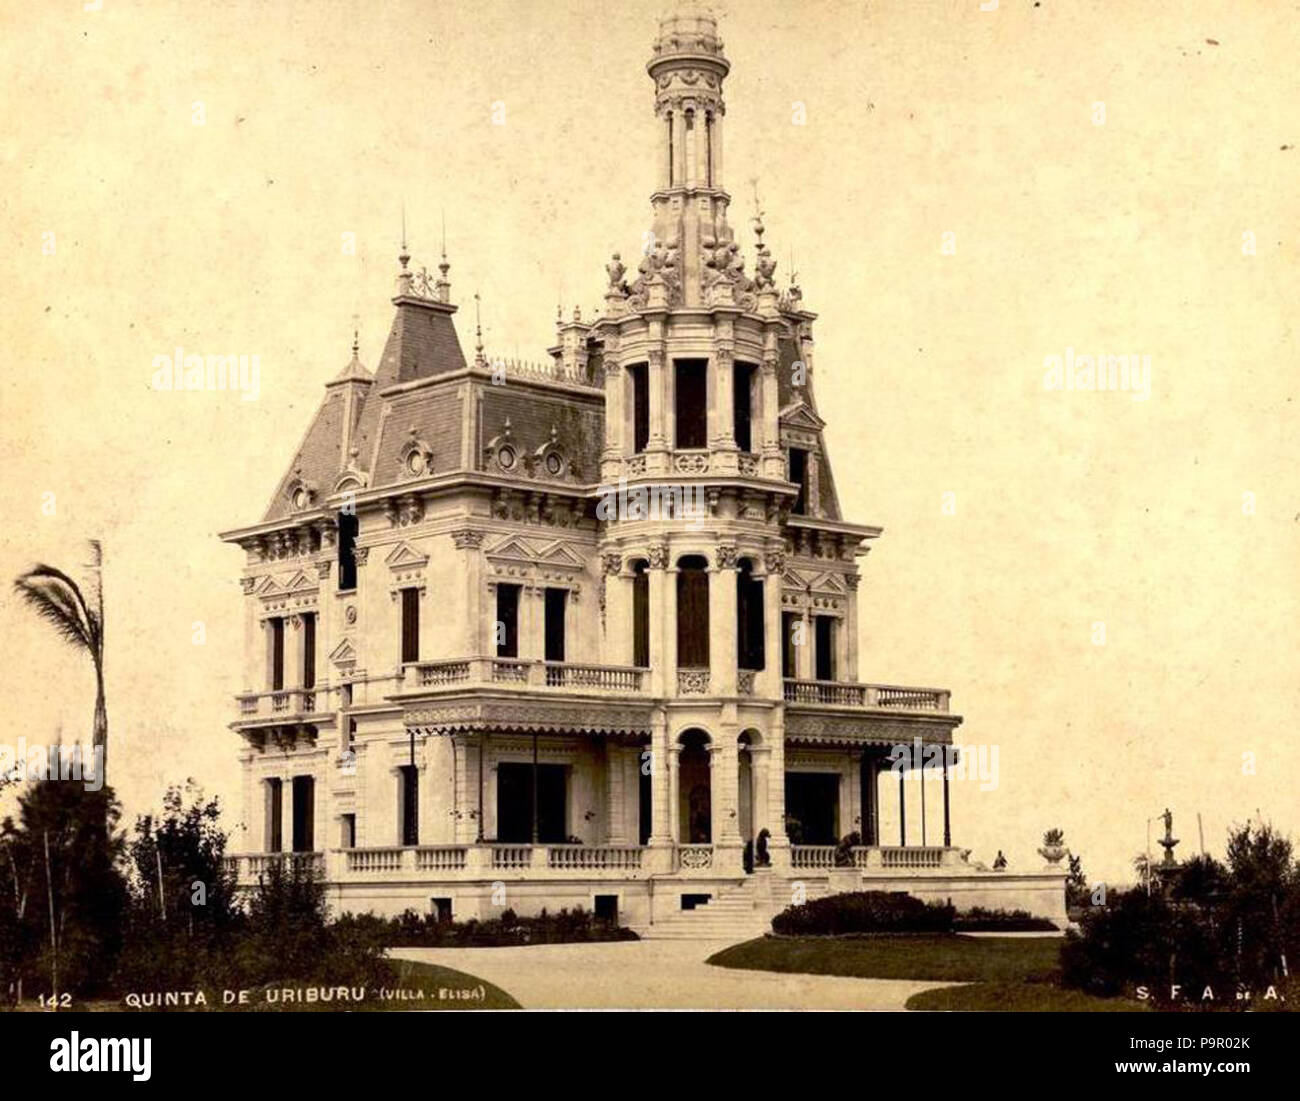 148 Archivo General de la Nación Argentina 1890 aprox Buenos Aires, Palacio Uriburu Stock Photo